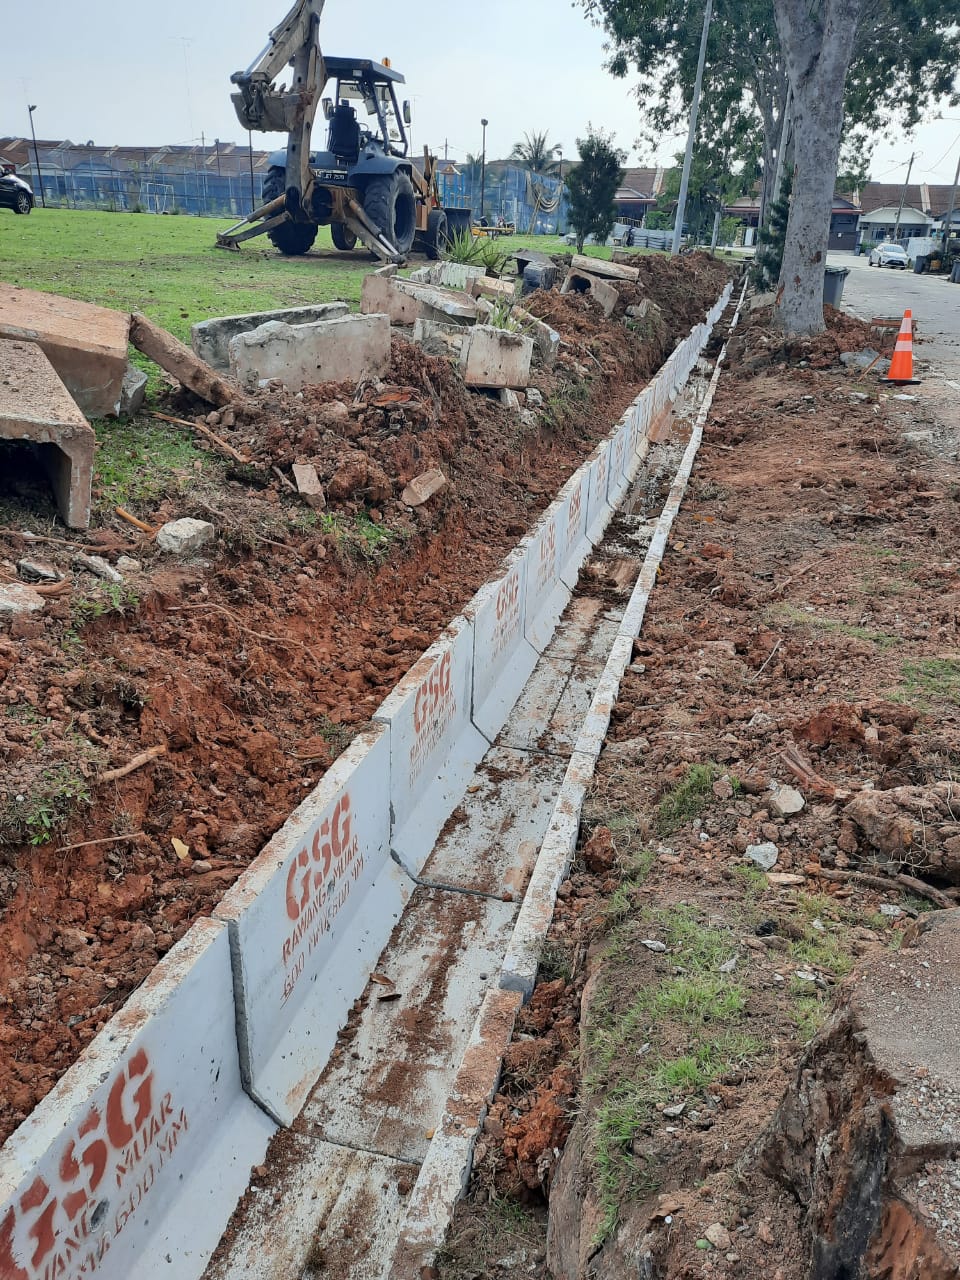 （已签发）柔：居民反对挖掘屋前沟渠，县议会工程组俯顺民意